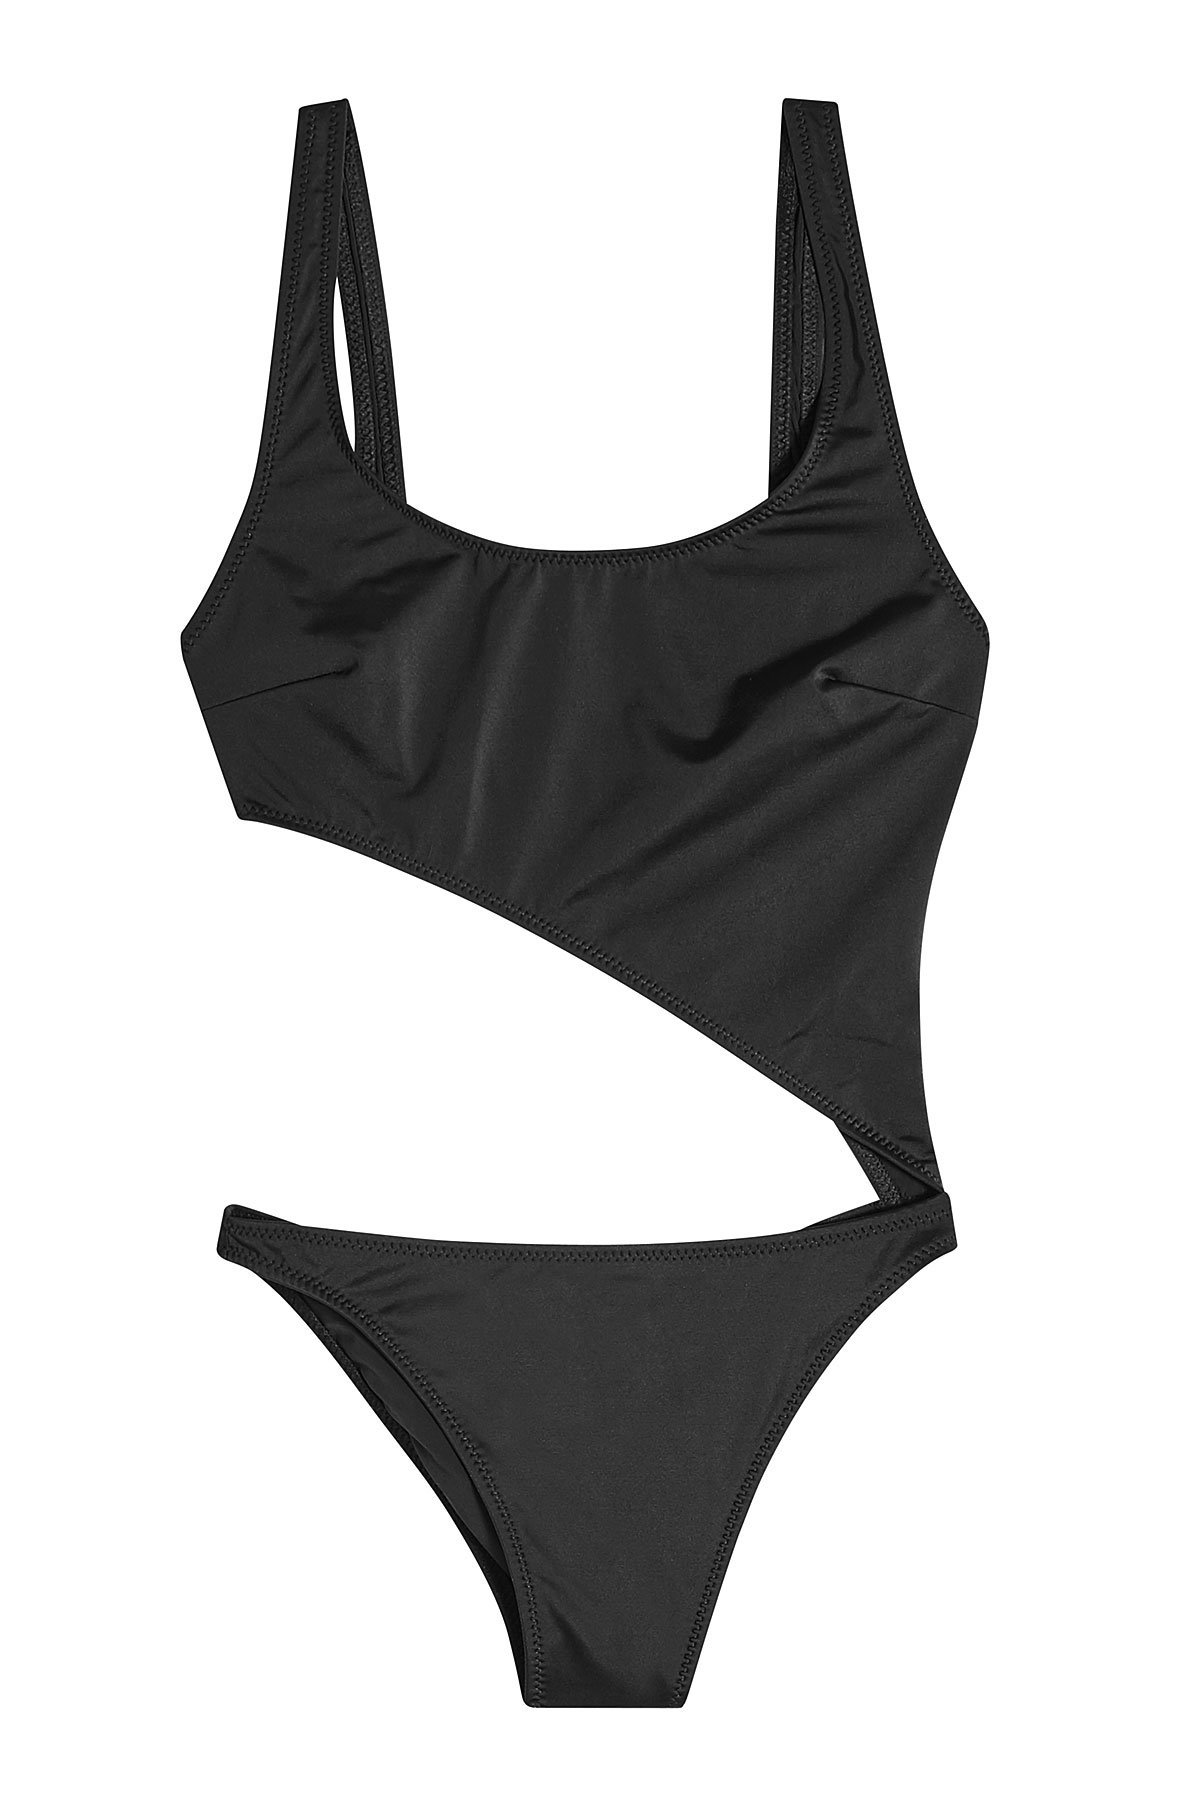 Solid & Striped - The Jourdan Swimsuit